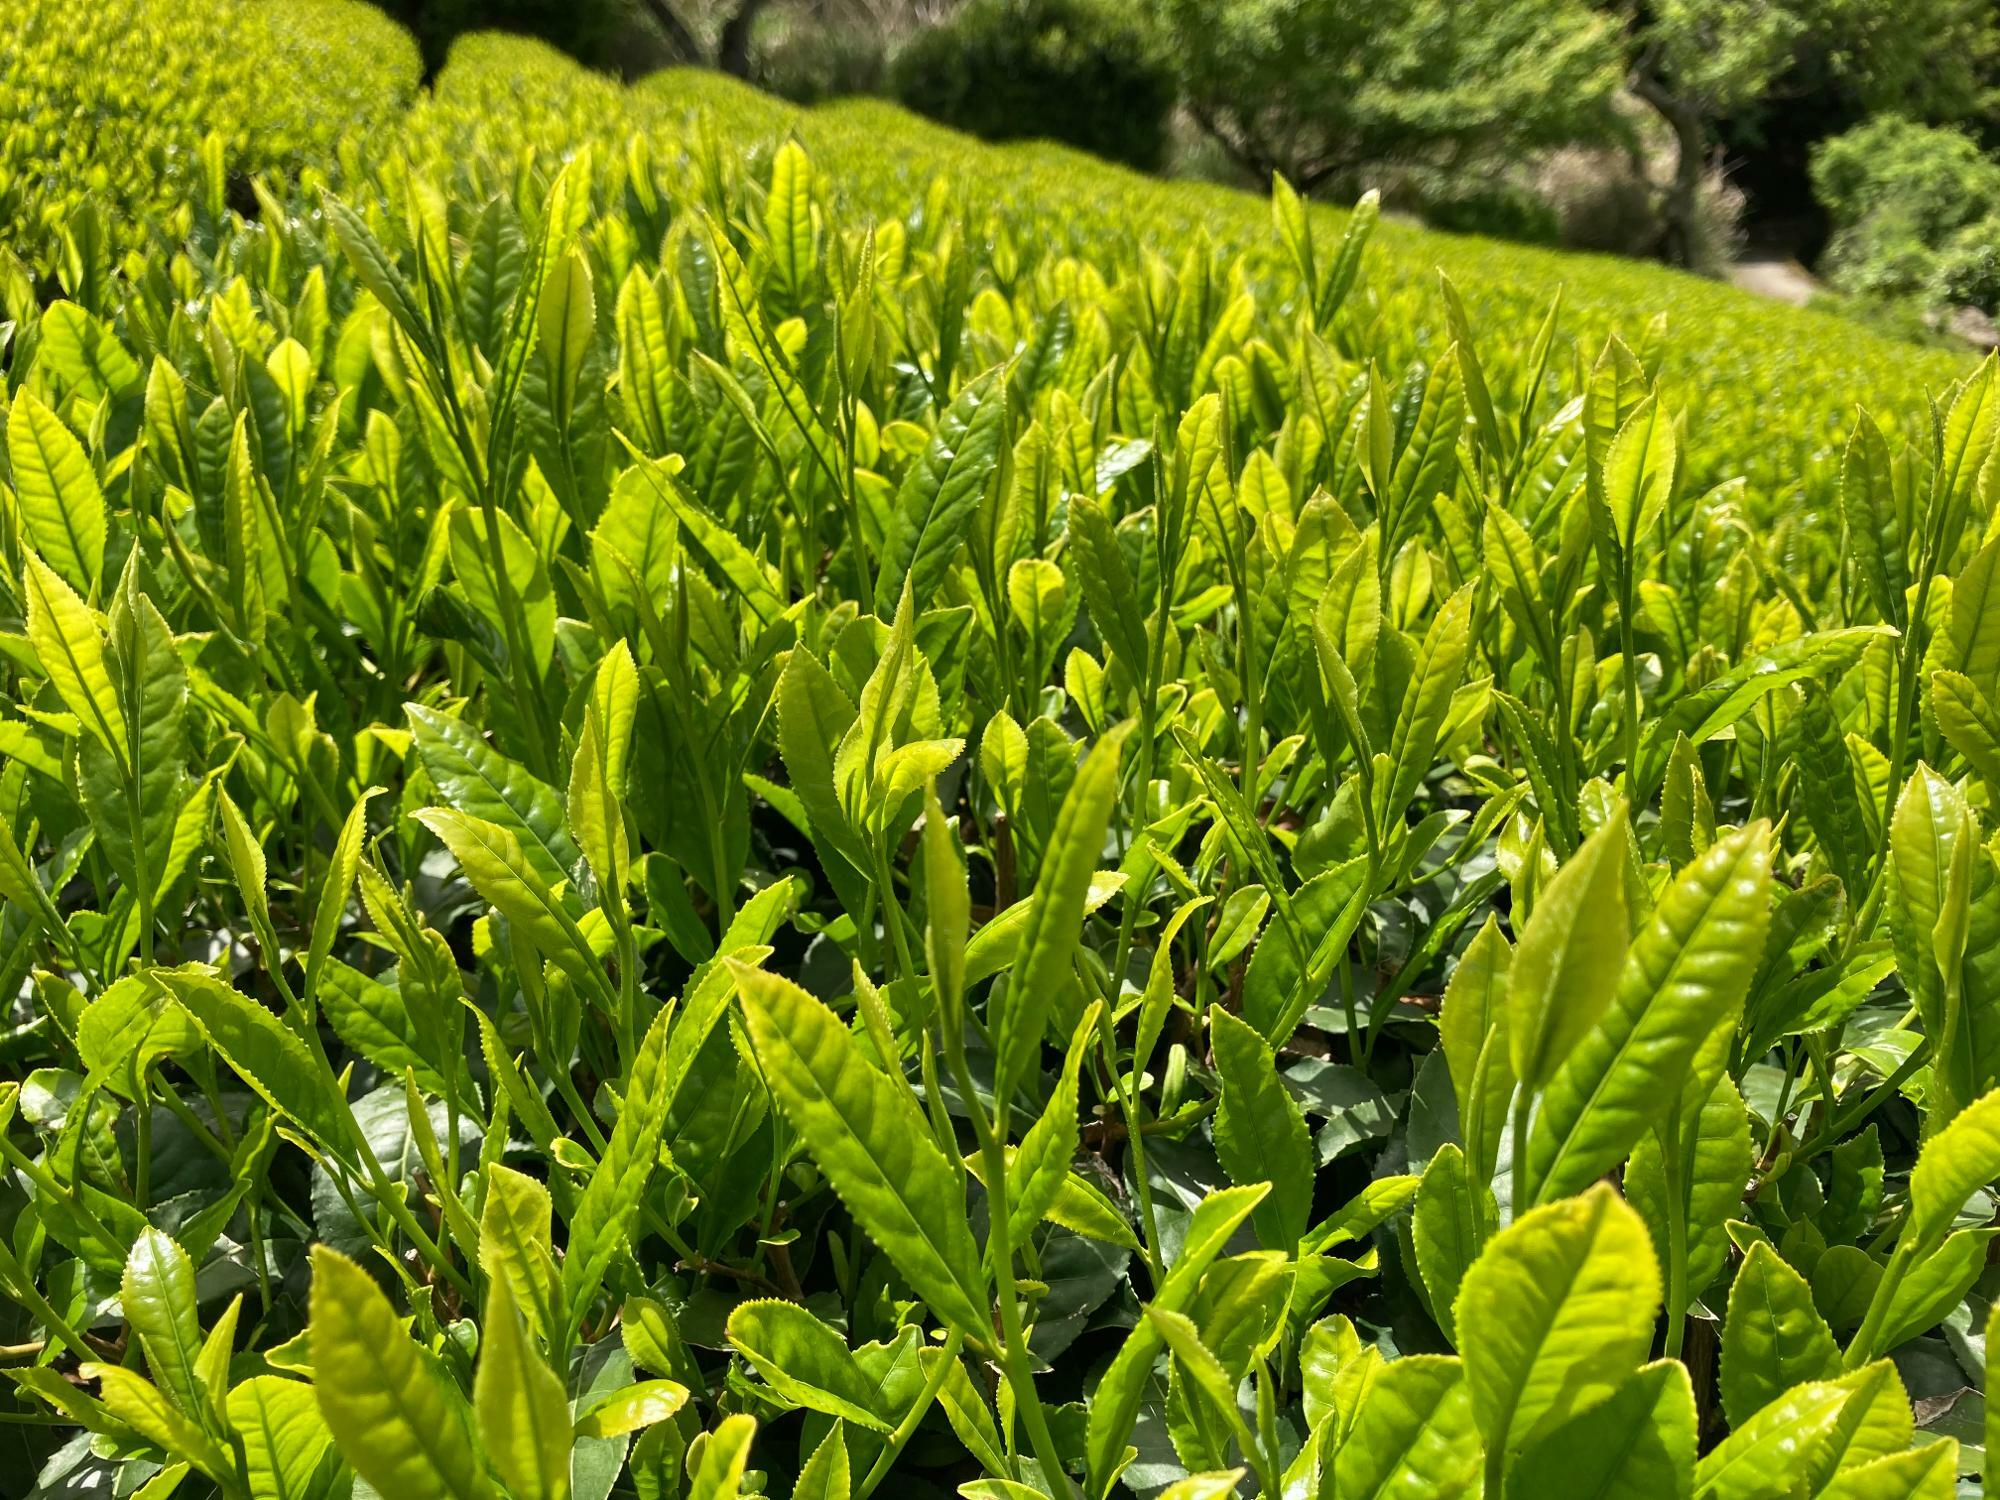 茶摘みの時期の茶畑風景を見ながらお茶を飲むのもリフレッシュになります